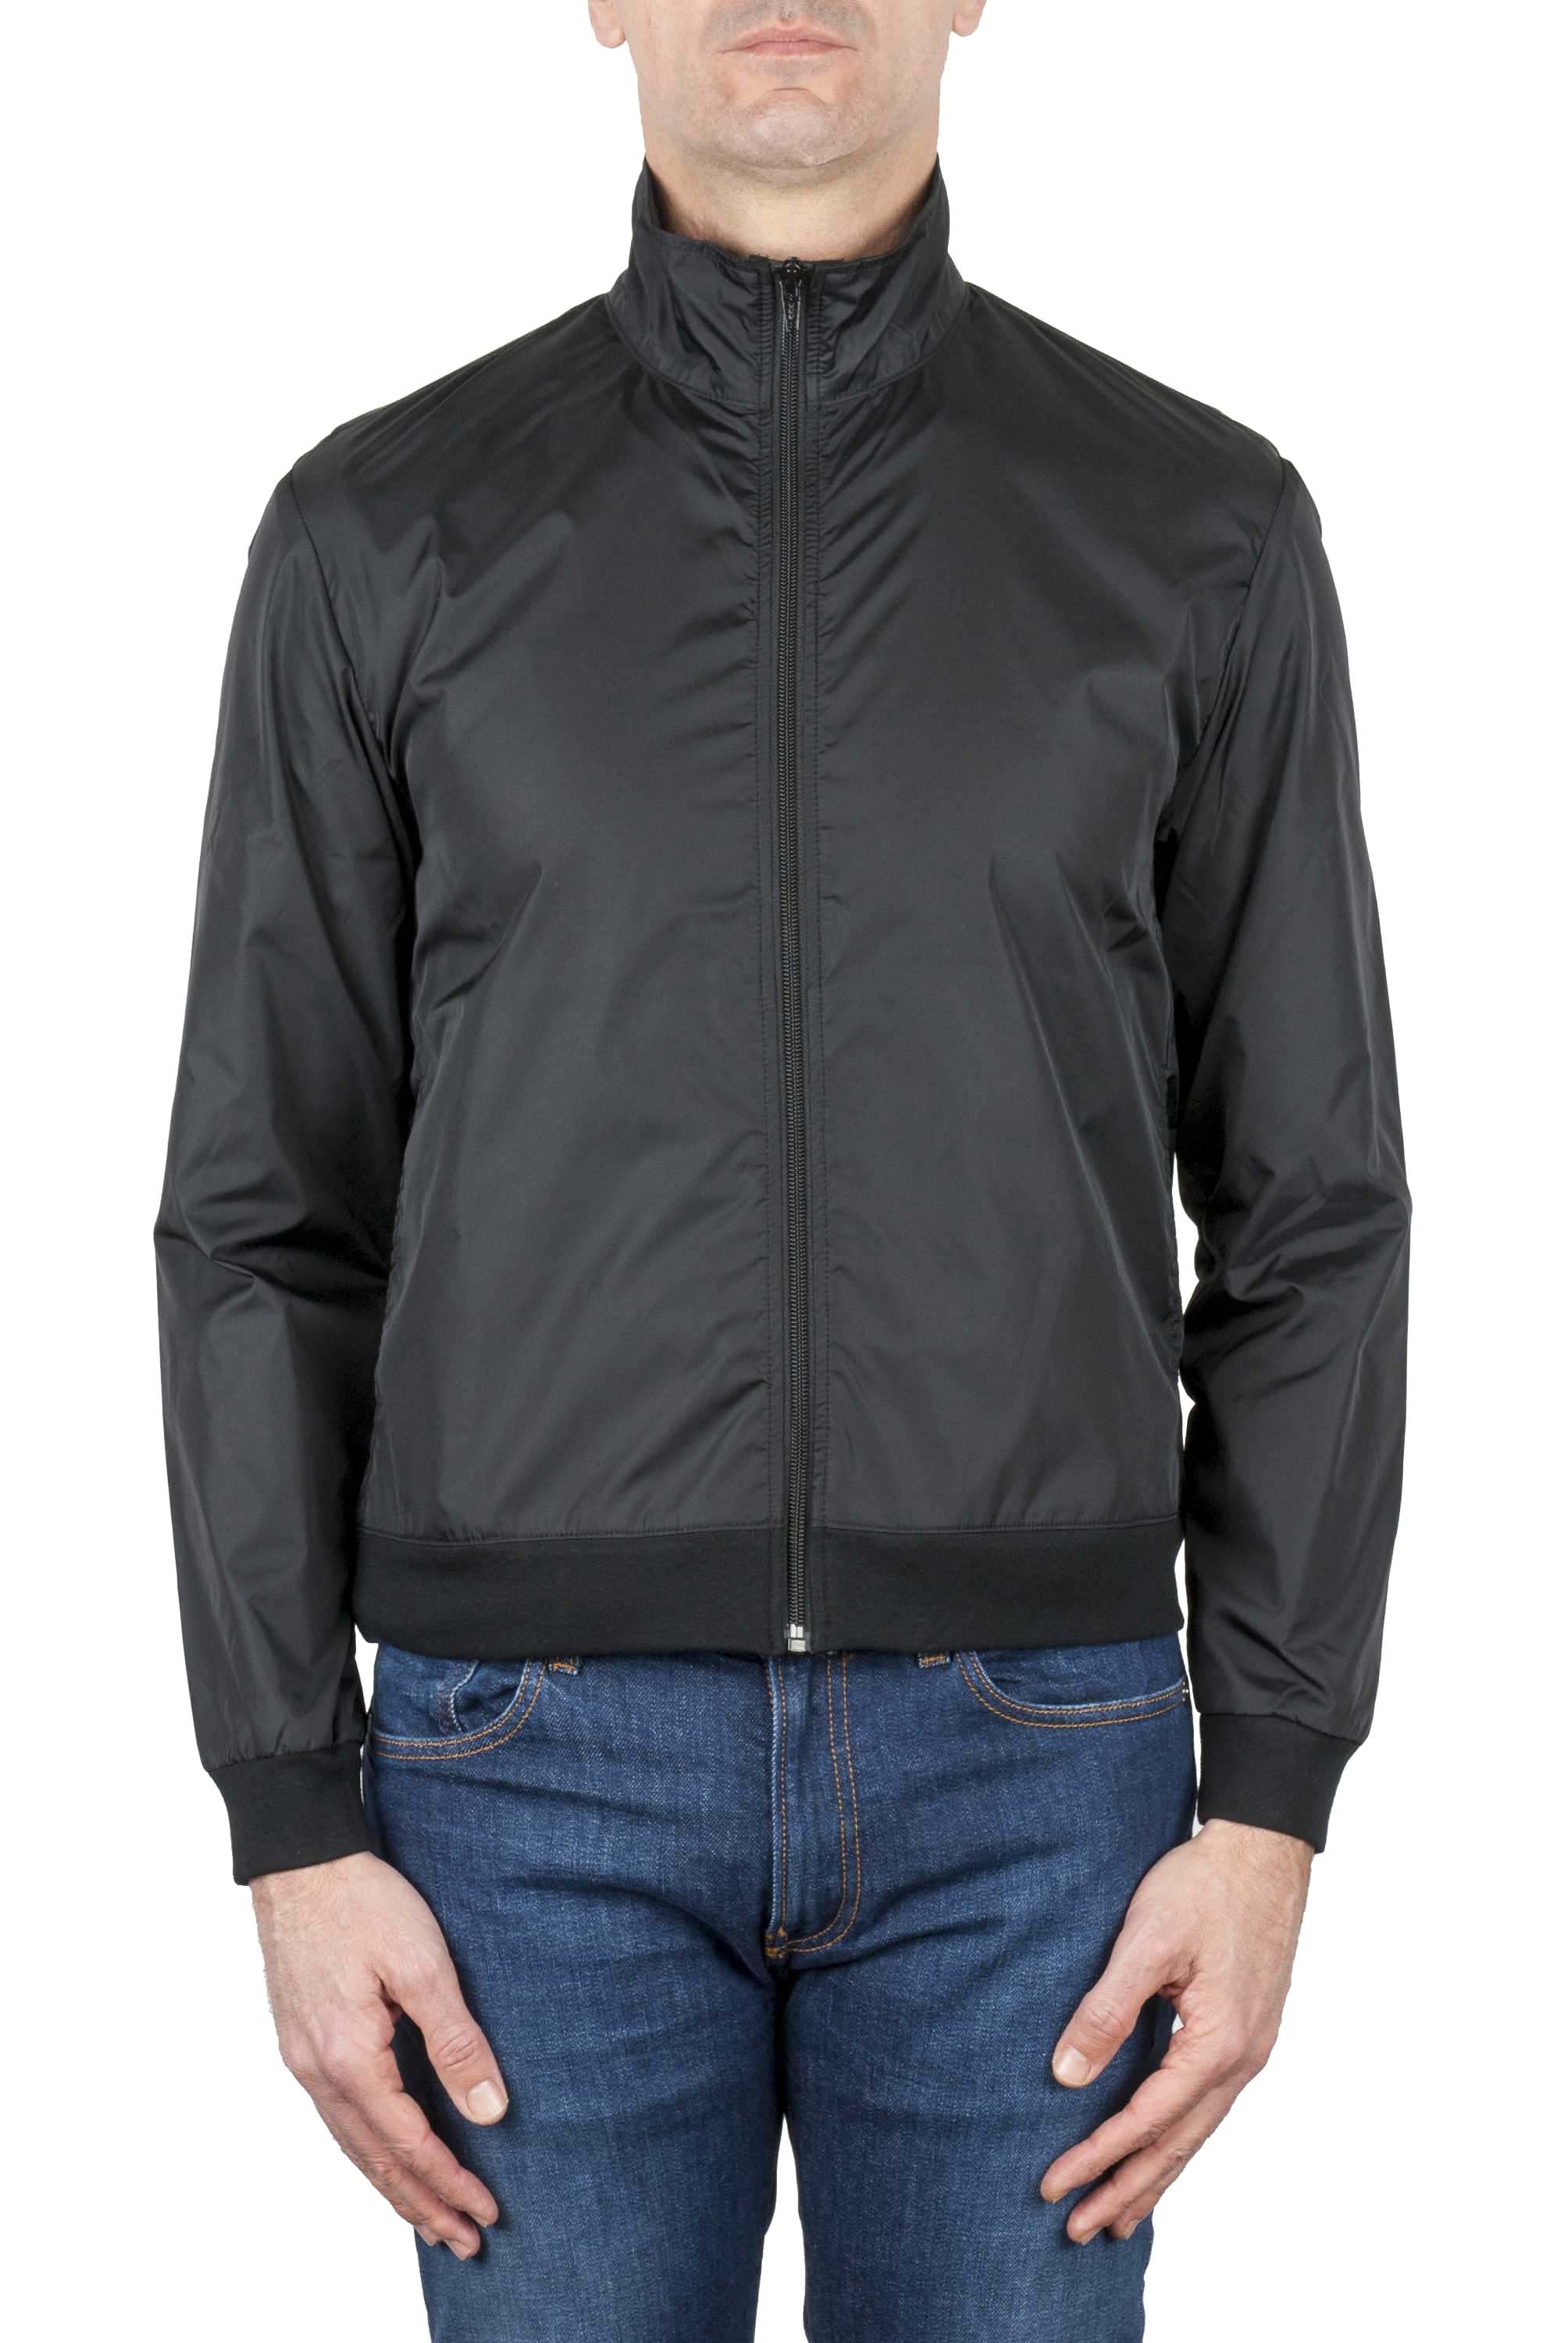 SBU 01565 Windbreaker bomber jacket in black ultra-lightweight nylon 01